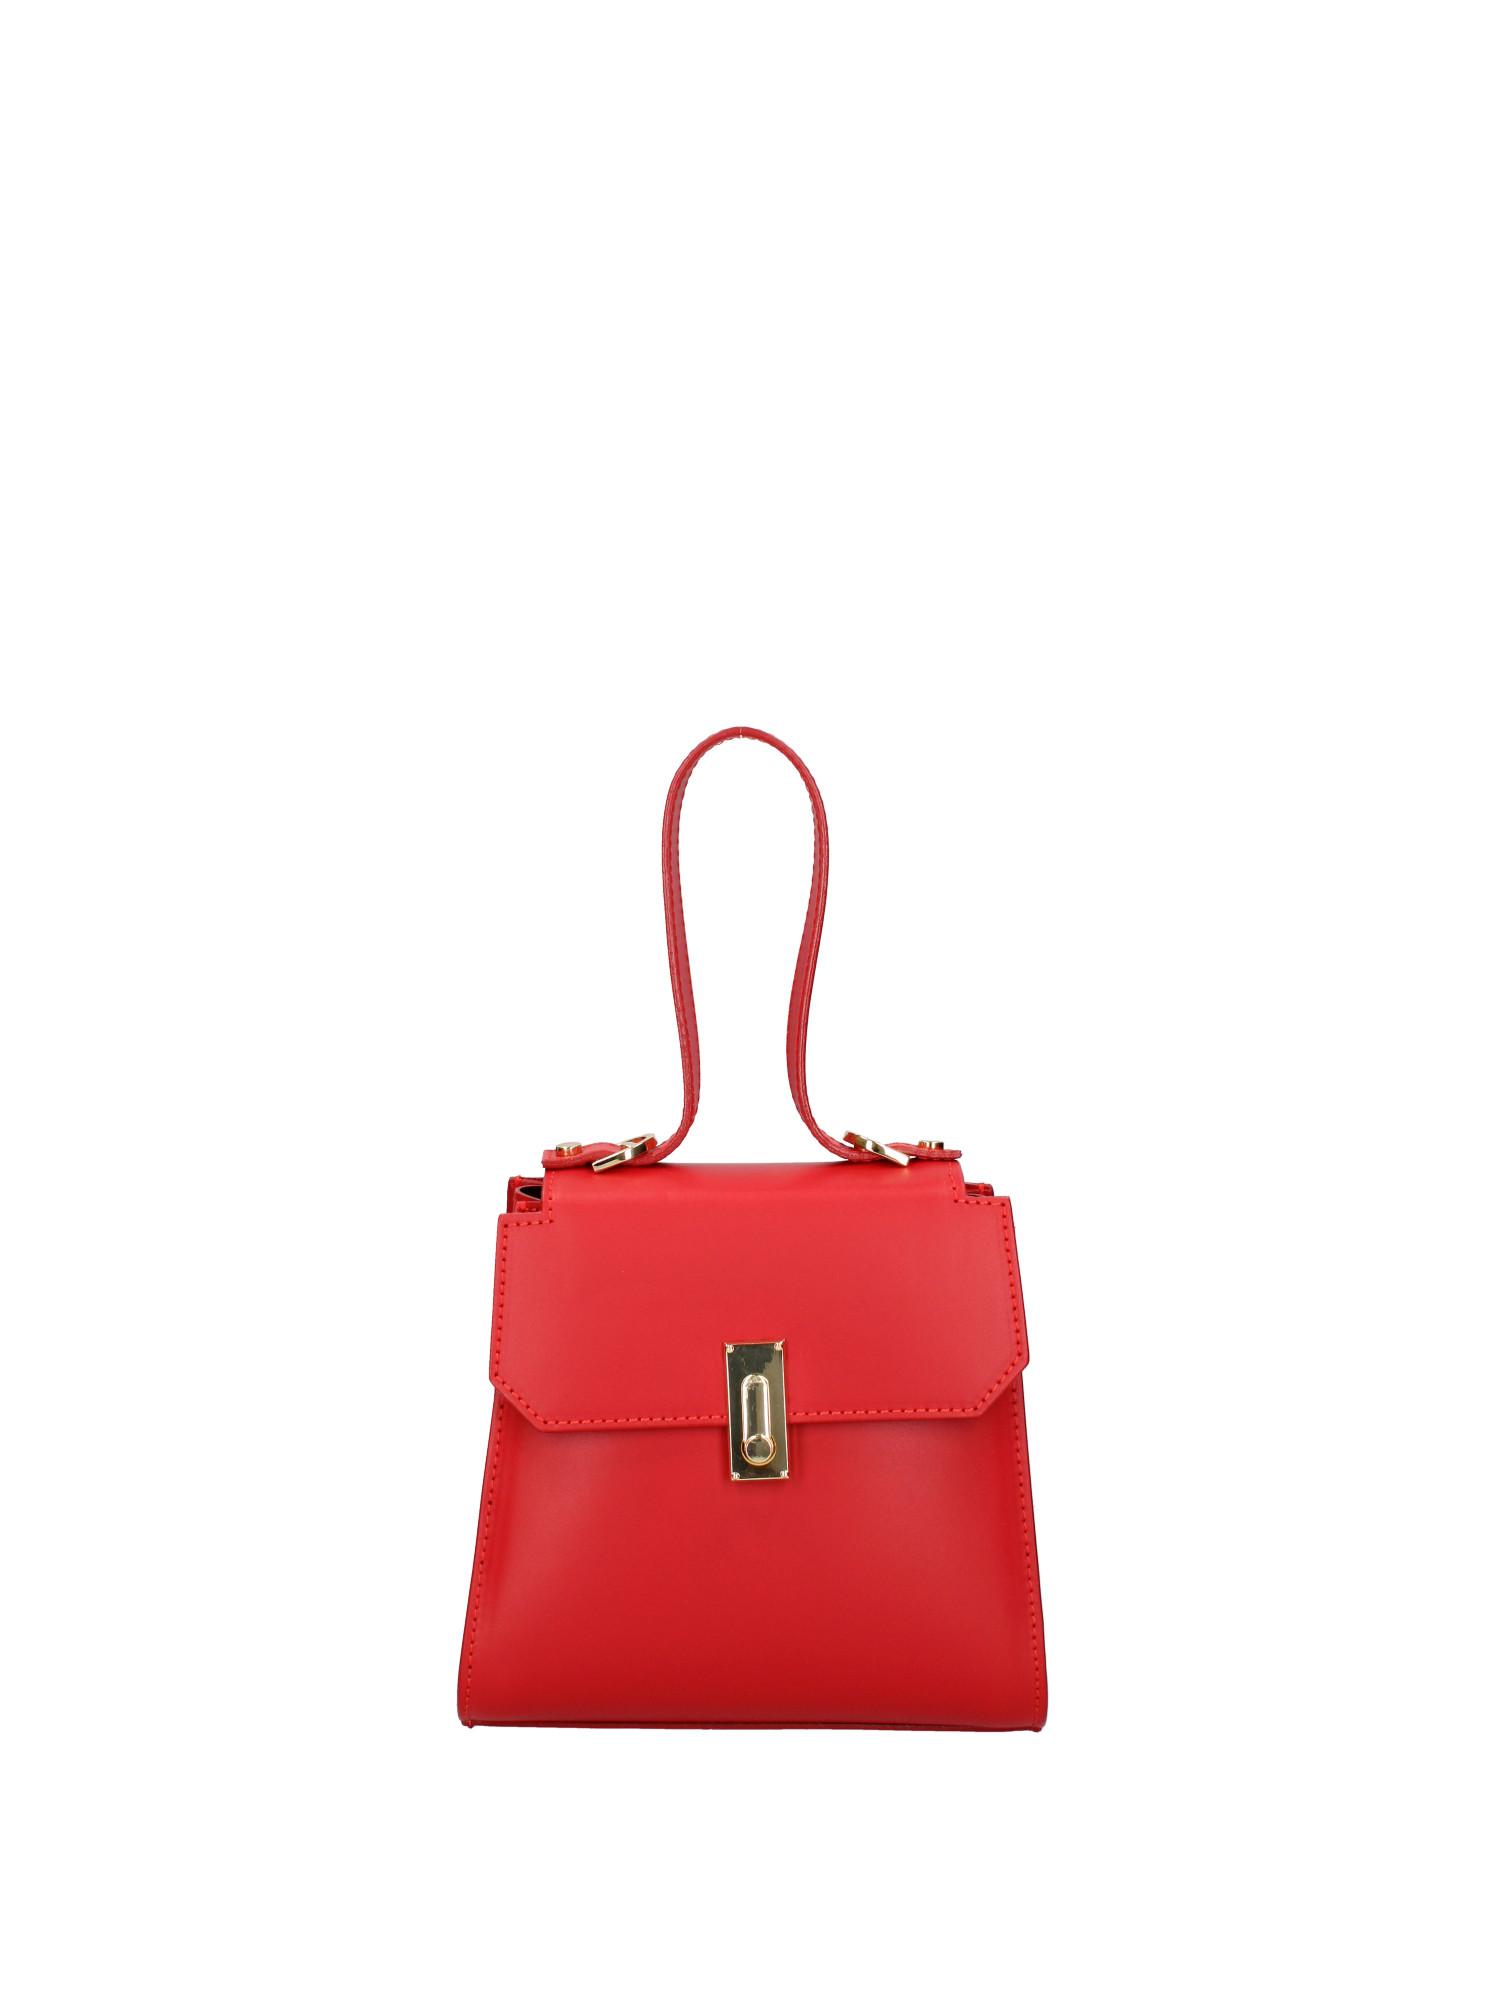 Handtasche Damen Rot Bunt ONE SIZE von Viola Castellani